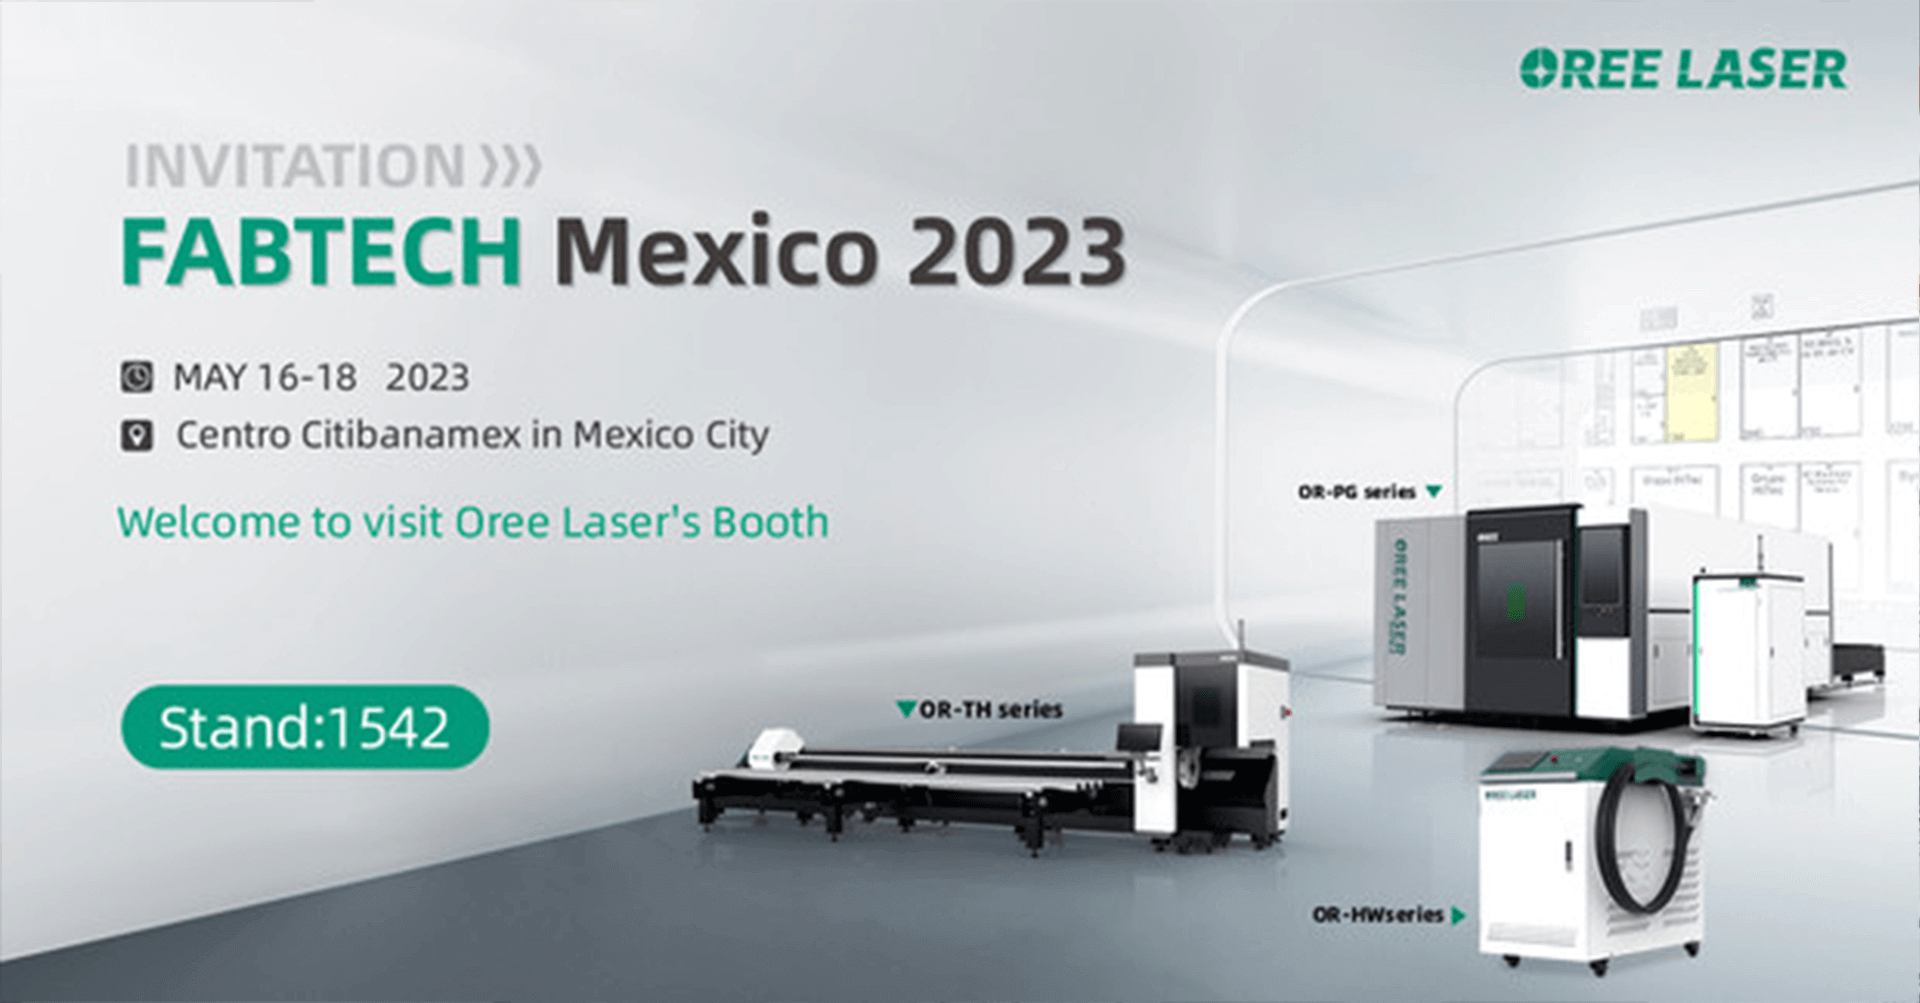 OREE LASER se complace en anunciar que FABTECH 2023 México se llevará a cabo del 16 al 18 de mayo, OREE Laser estará presente.